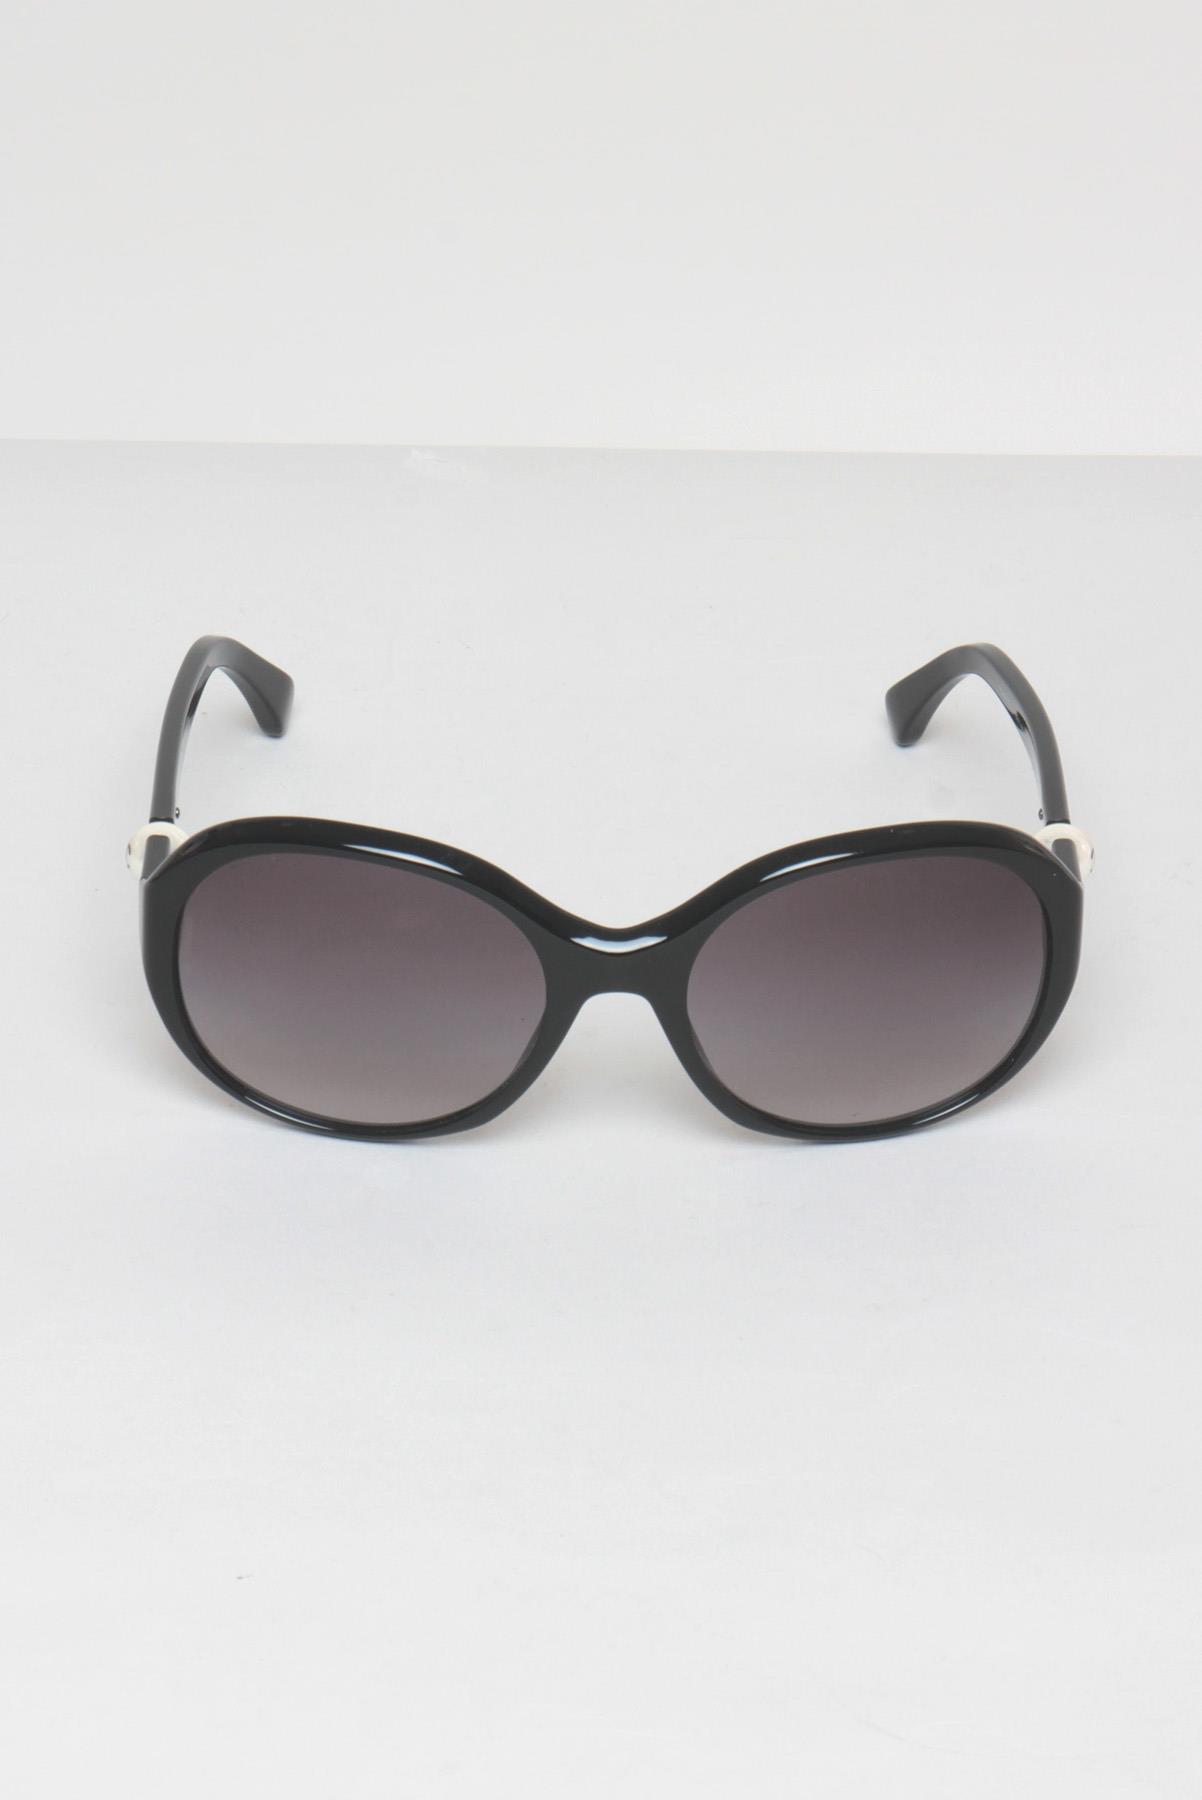 Óculos Chanel 5211-H Redondo Pérola Preto | New4another